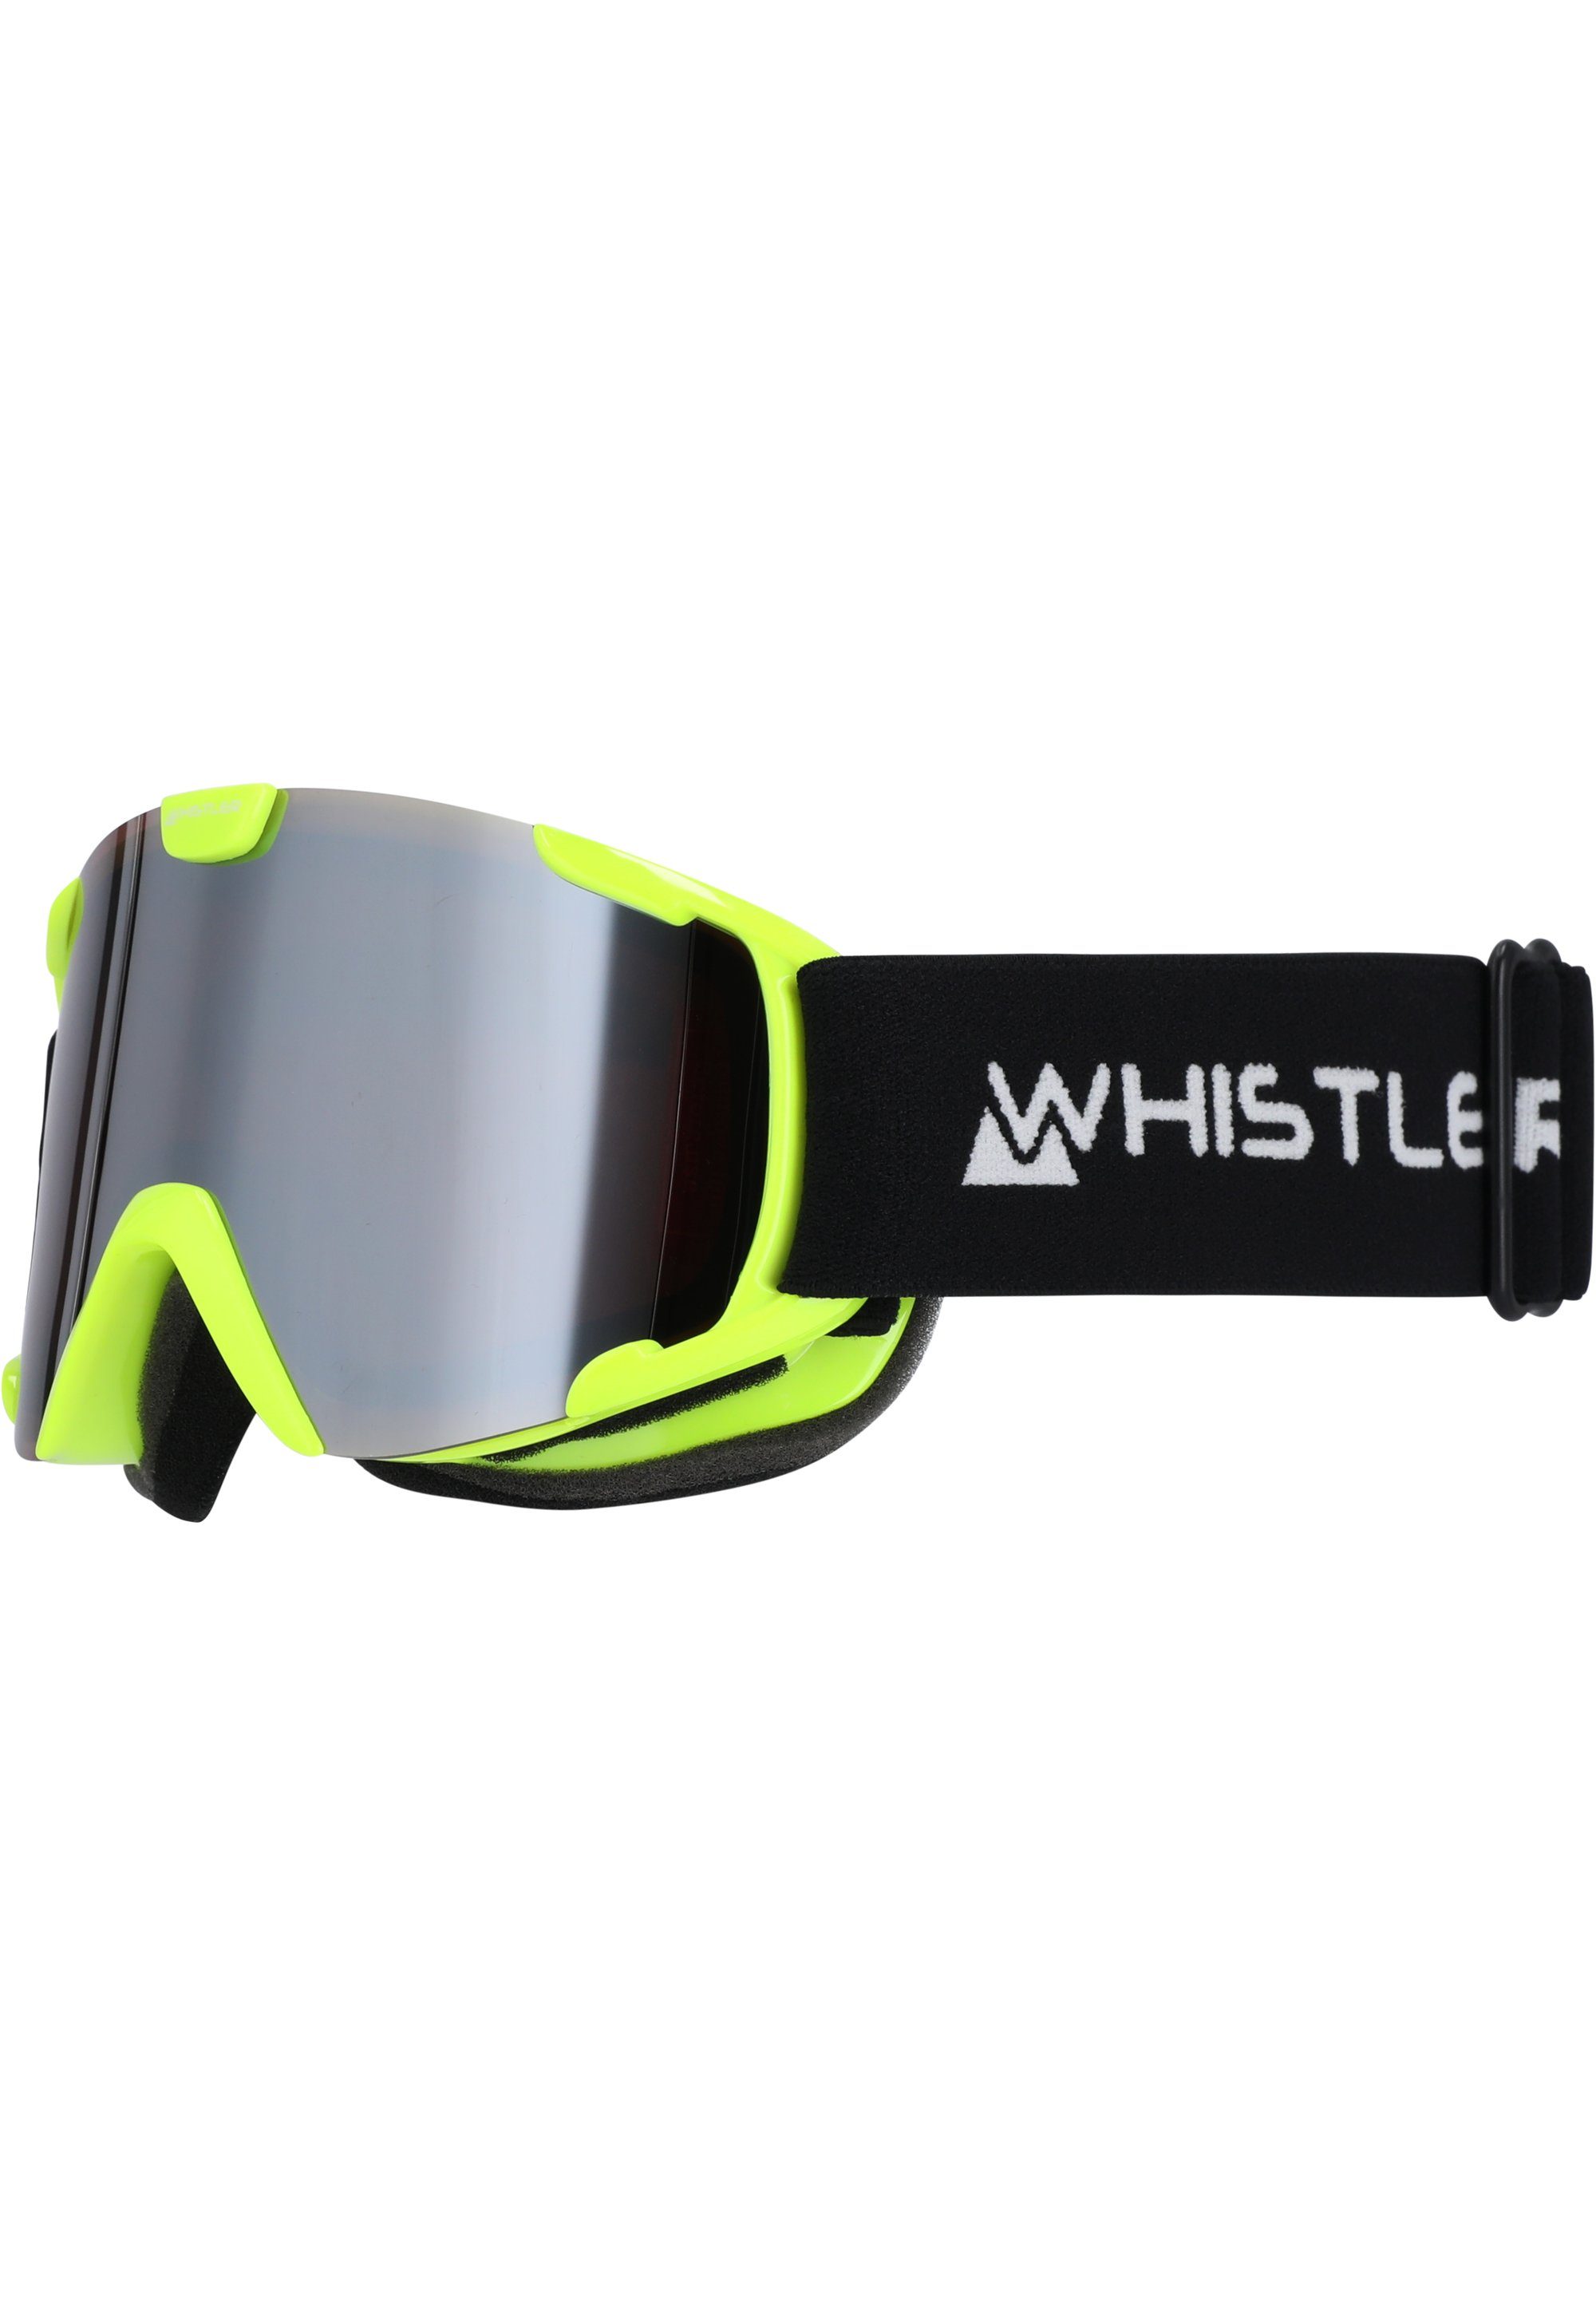 WHISTLER Skibrille neongelb WS800 Jr., mit Anti-Beschlag-Funktion